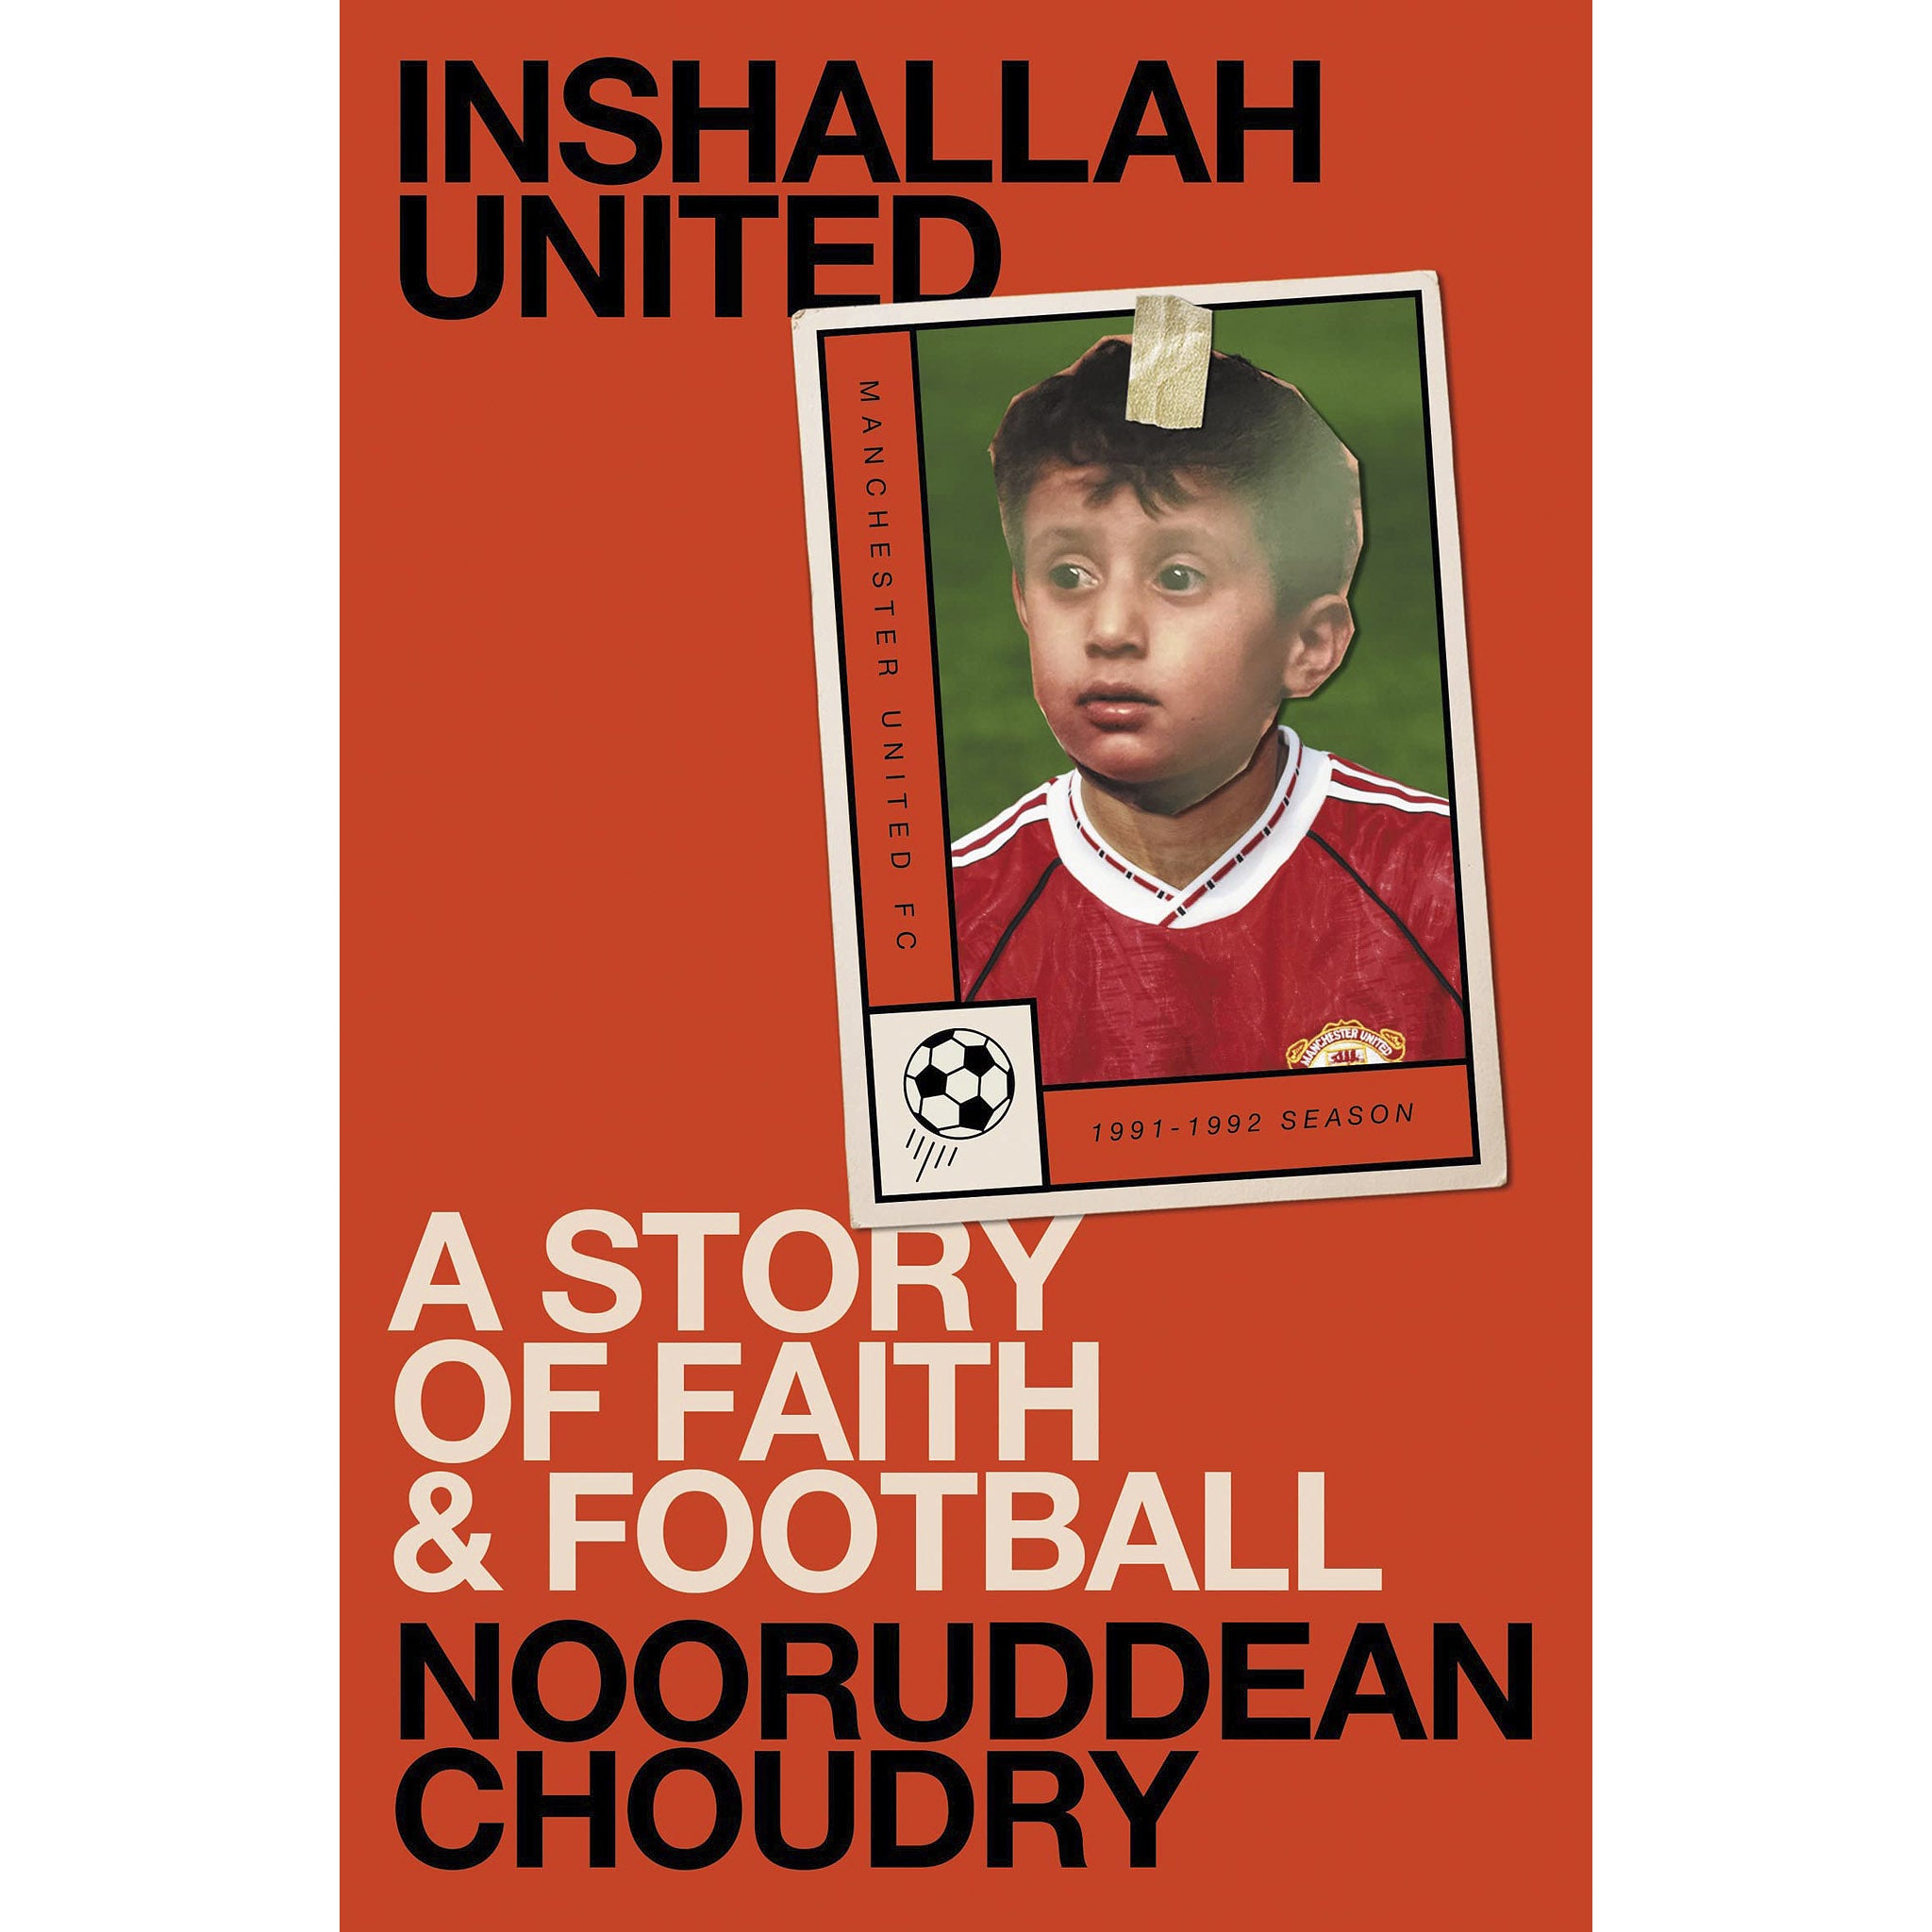 Inshallah United – A Story of Faith & Football